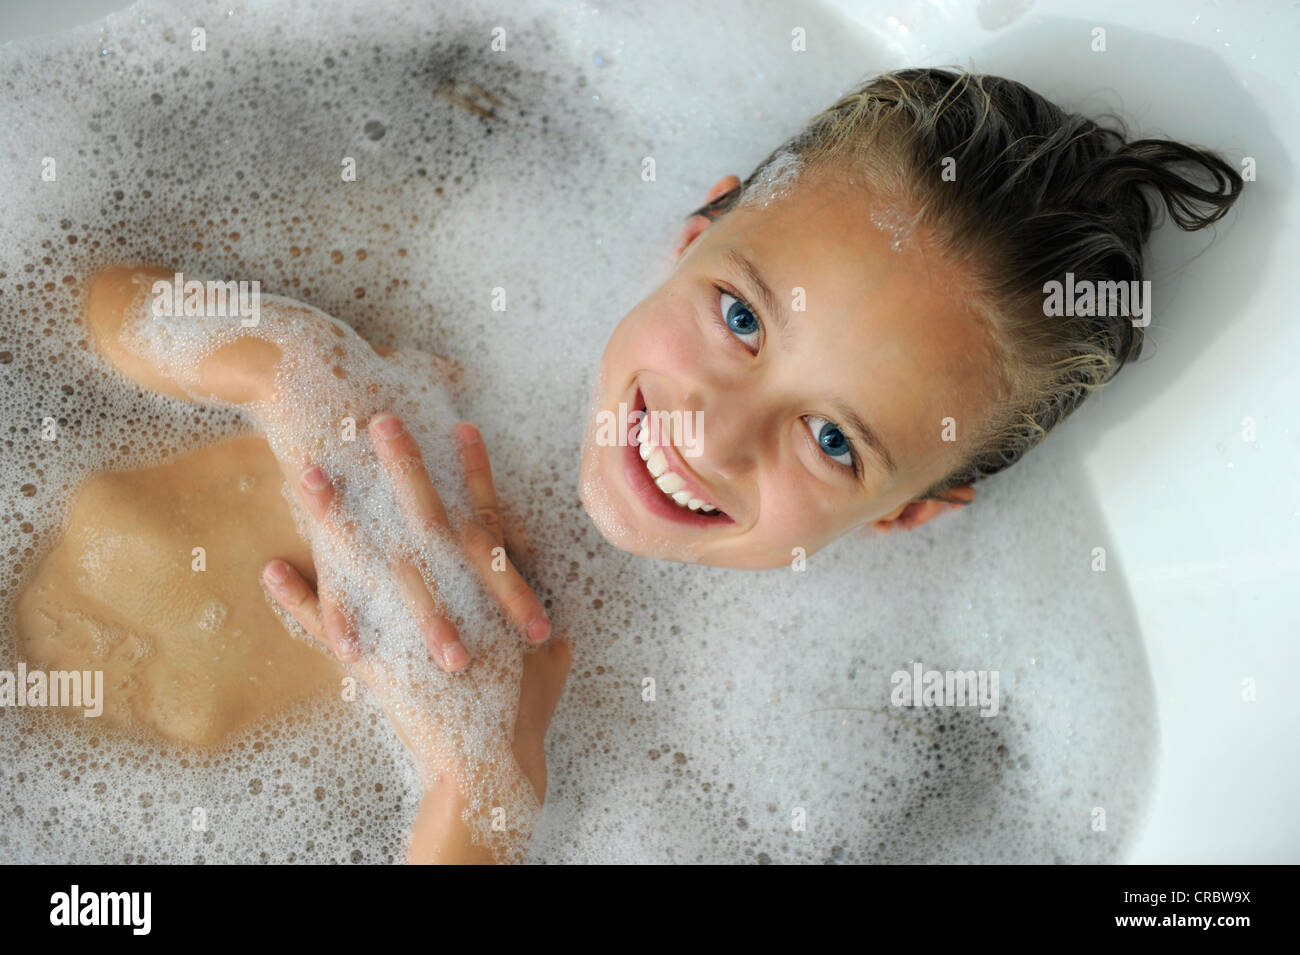 Junges Mädchen in einer Badewanne Stockfoto, Bild: 48819174 - Alamy